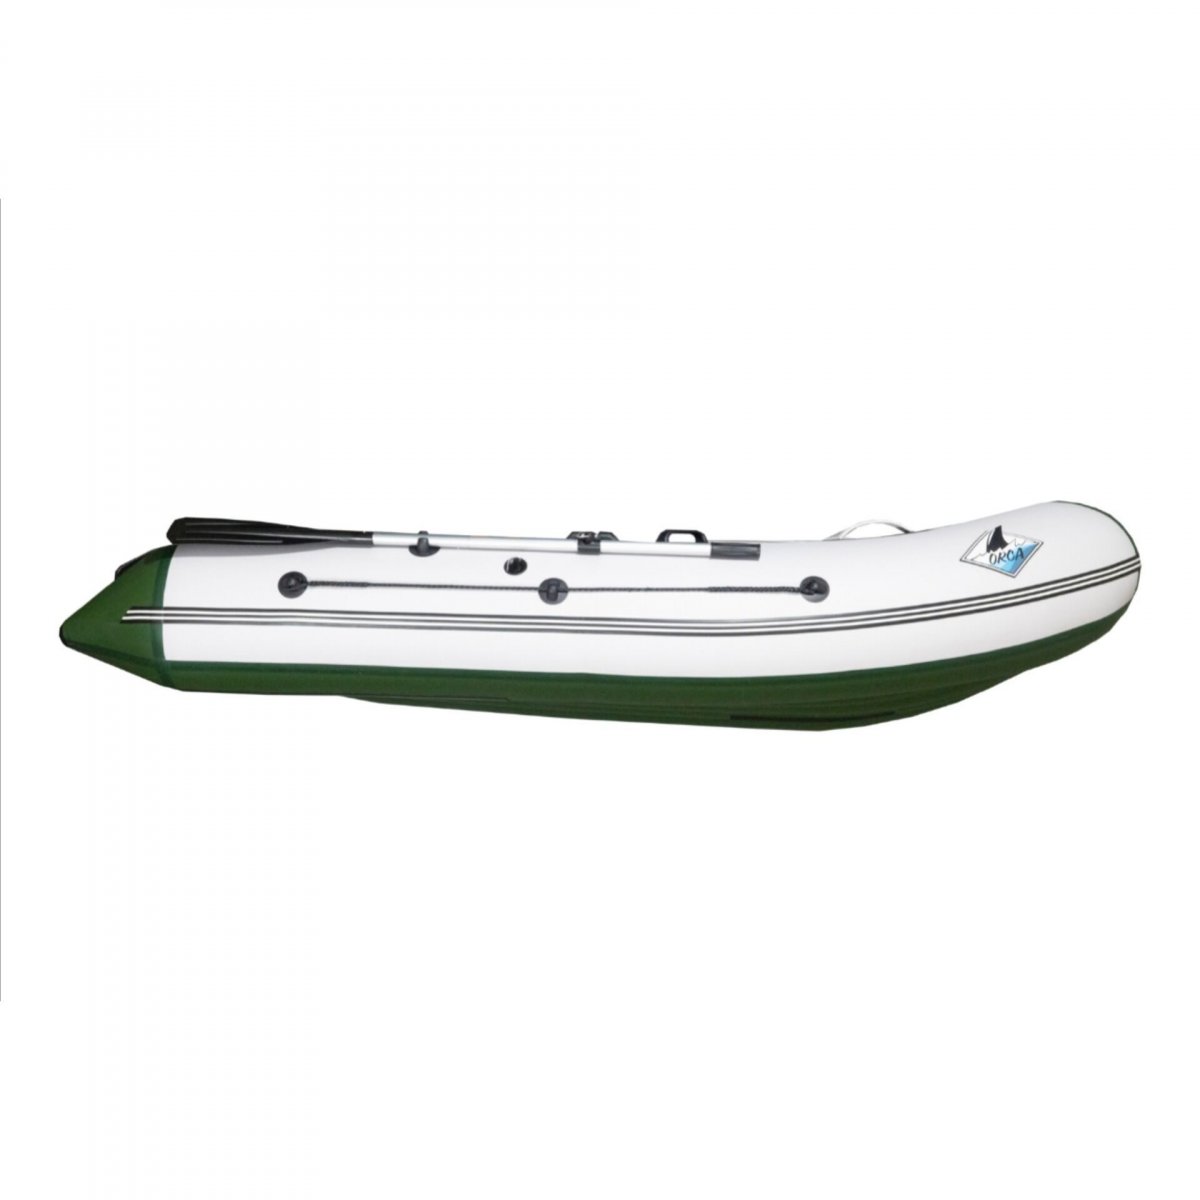 Лодки орка - официальный сайт производителя | Подробная информация о лодках Орка